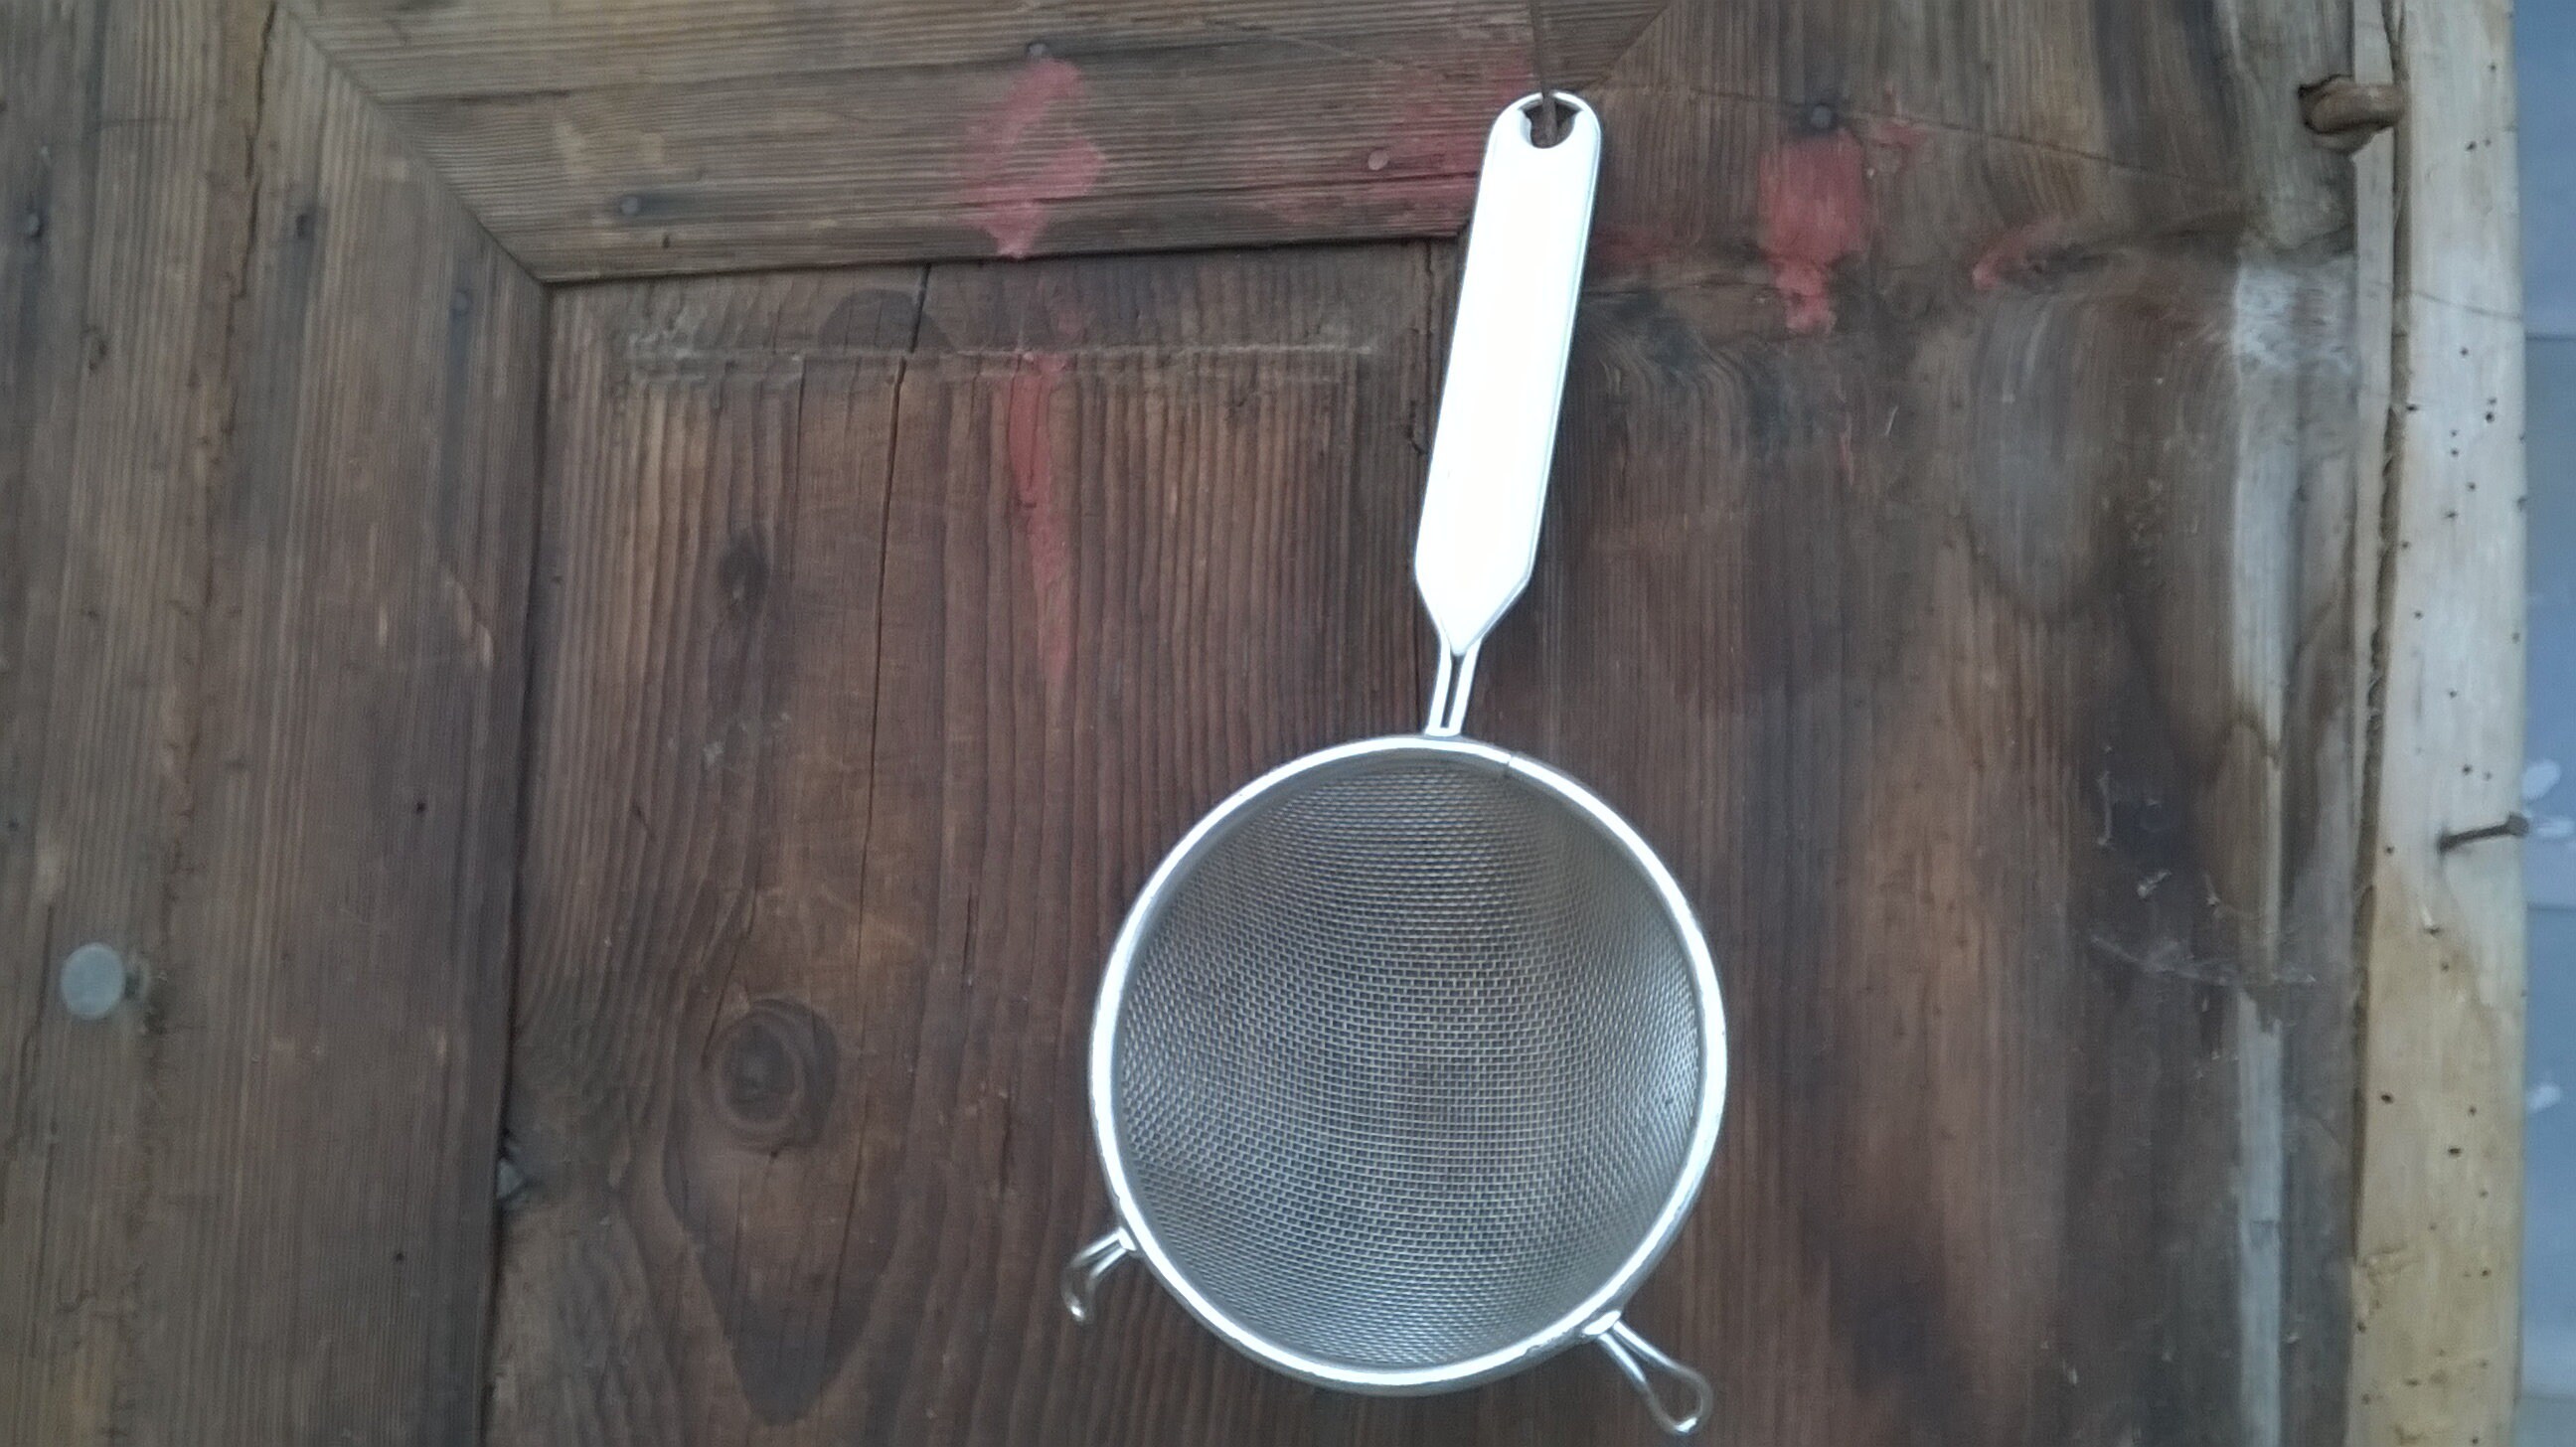 Rosle Stainless Steel Round Handle Fine Mesh Kitchen Strainer, 4.7-inch 